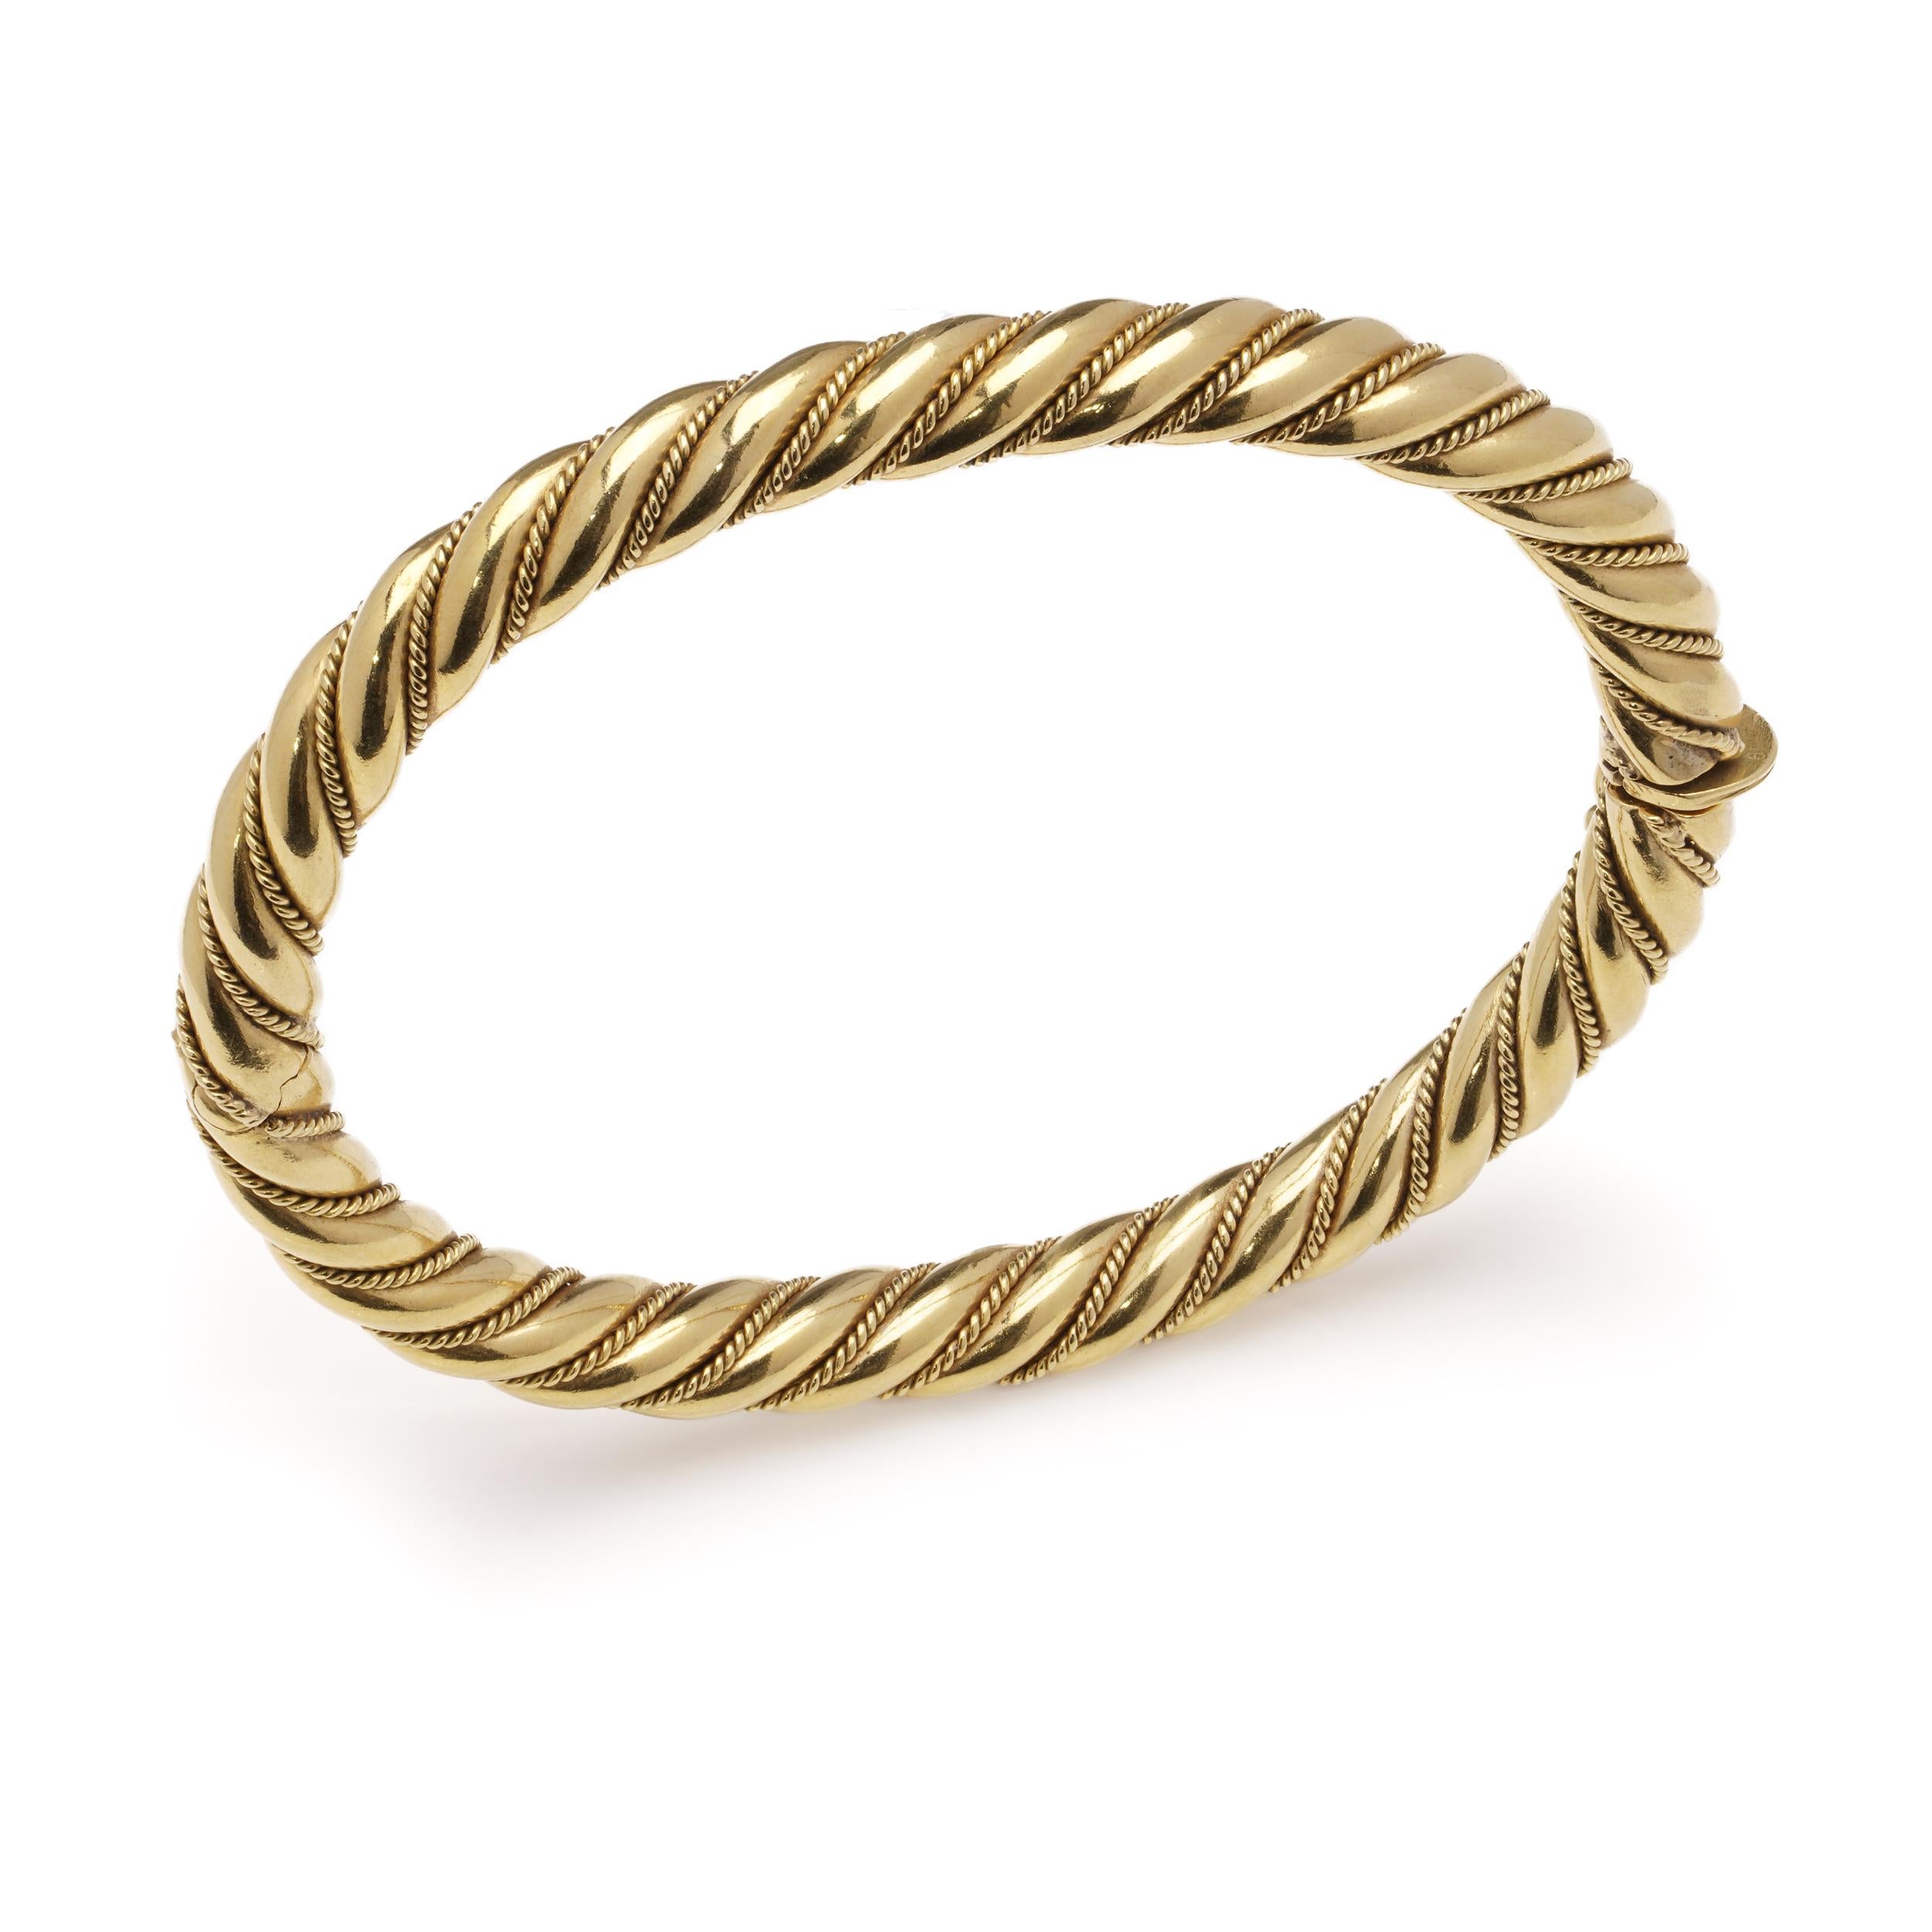 Vintage 18 kt. gold hinged bracelet with spiral twist design  For Sale 3